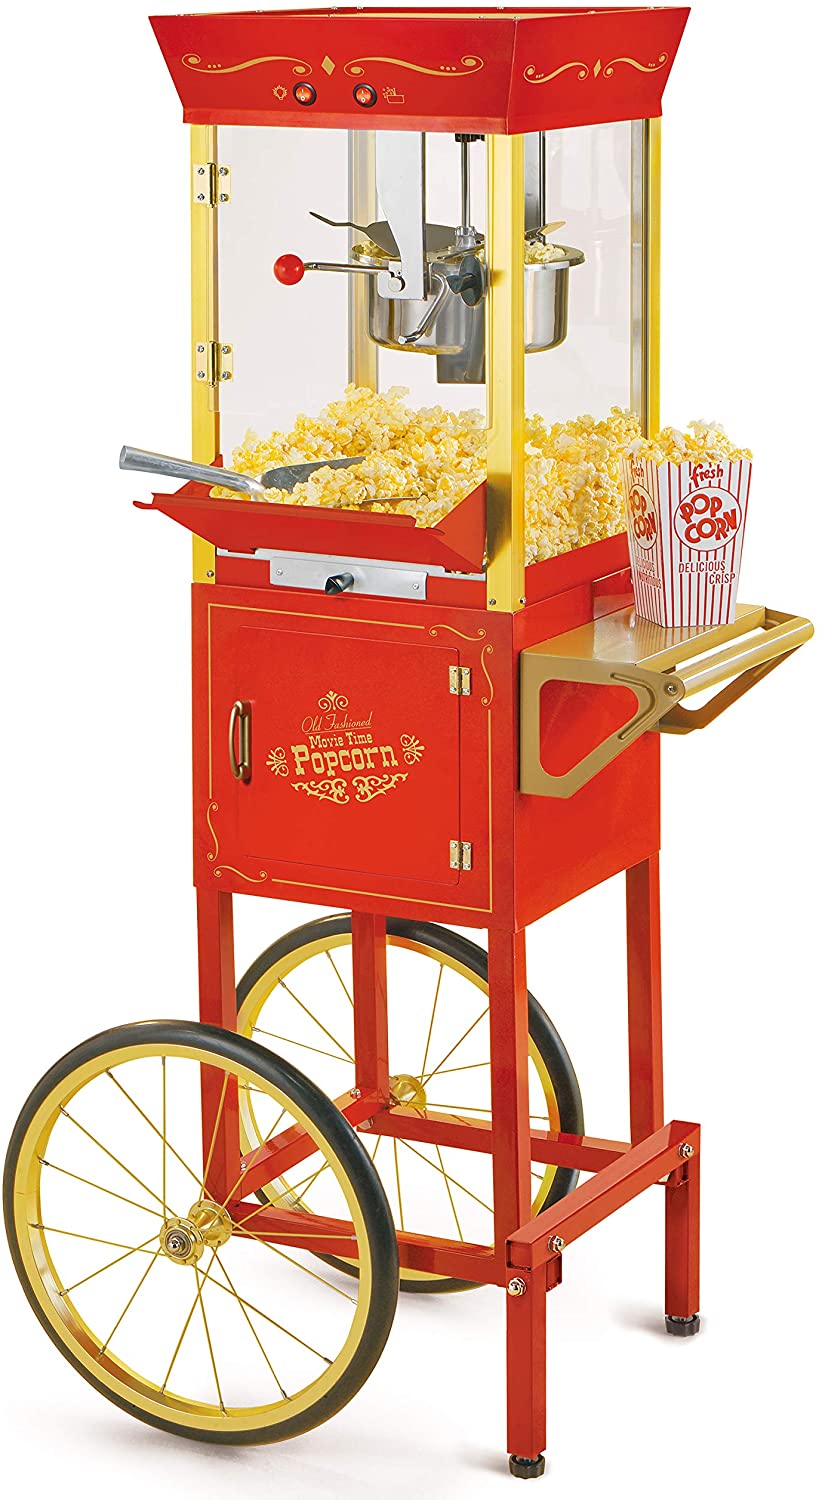 https://www.popcornlady.com/uploads/module/rental-products/popcorn-cart.jpg